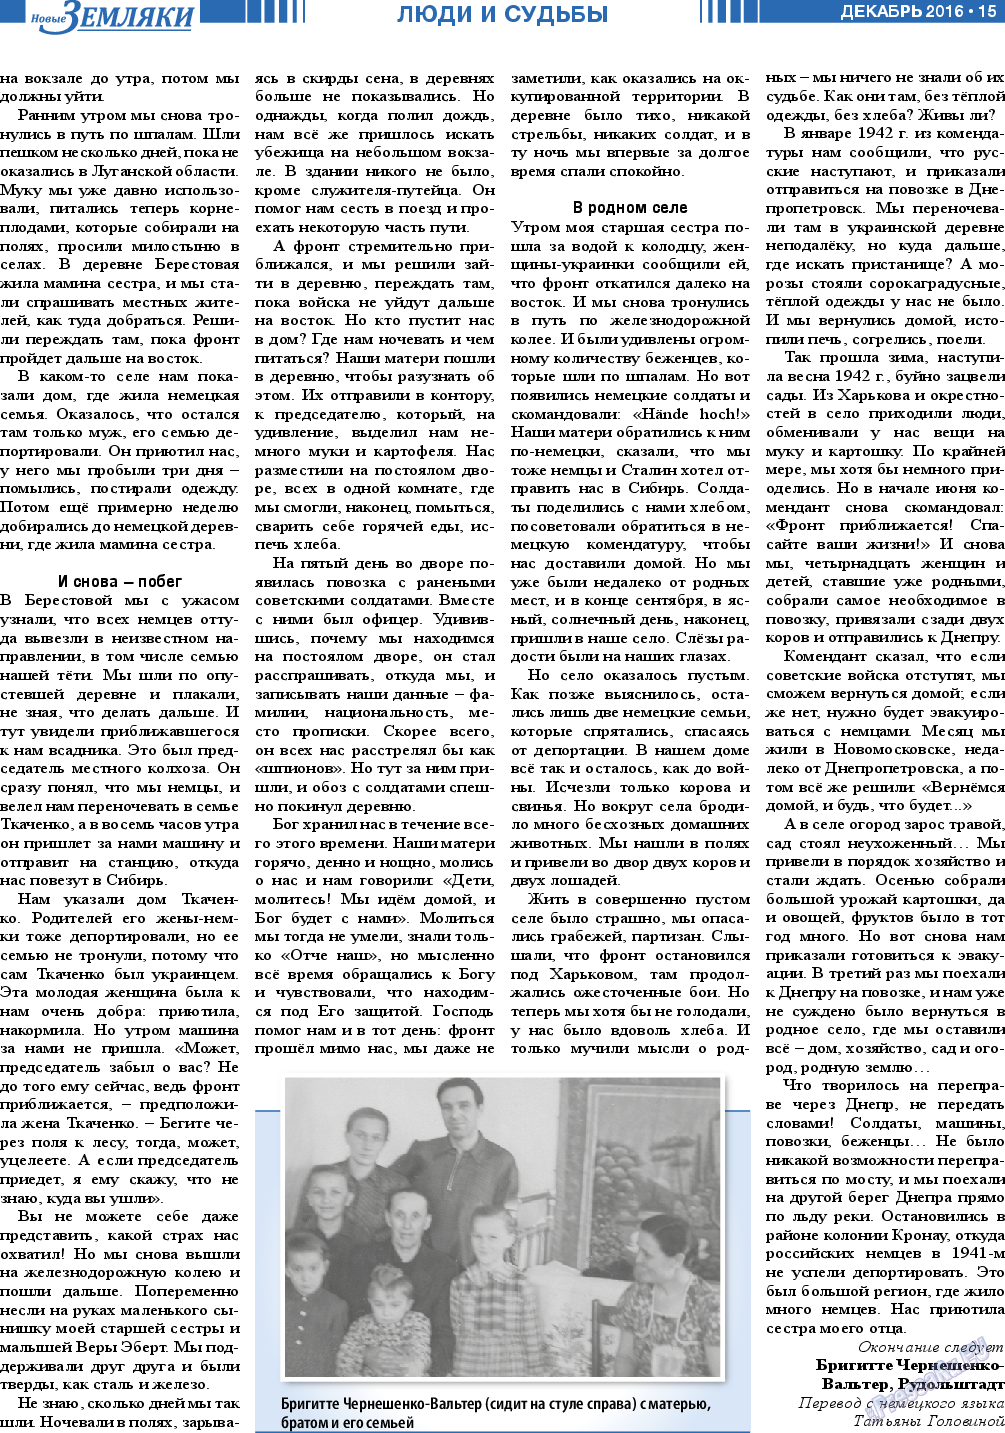 Новые Земляки (газета). 2016 год, номер 12, стр. 15